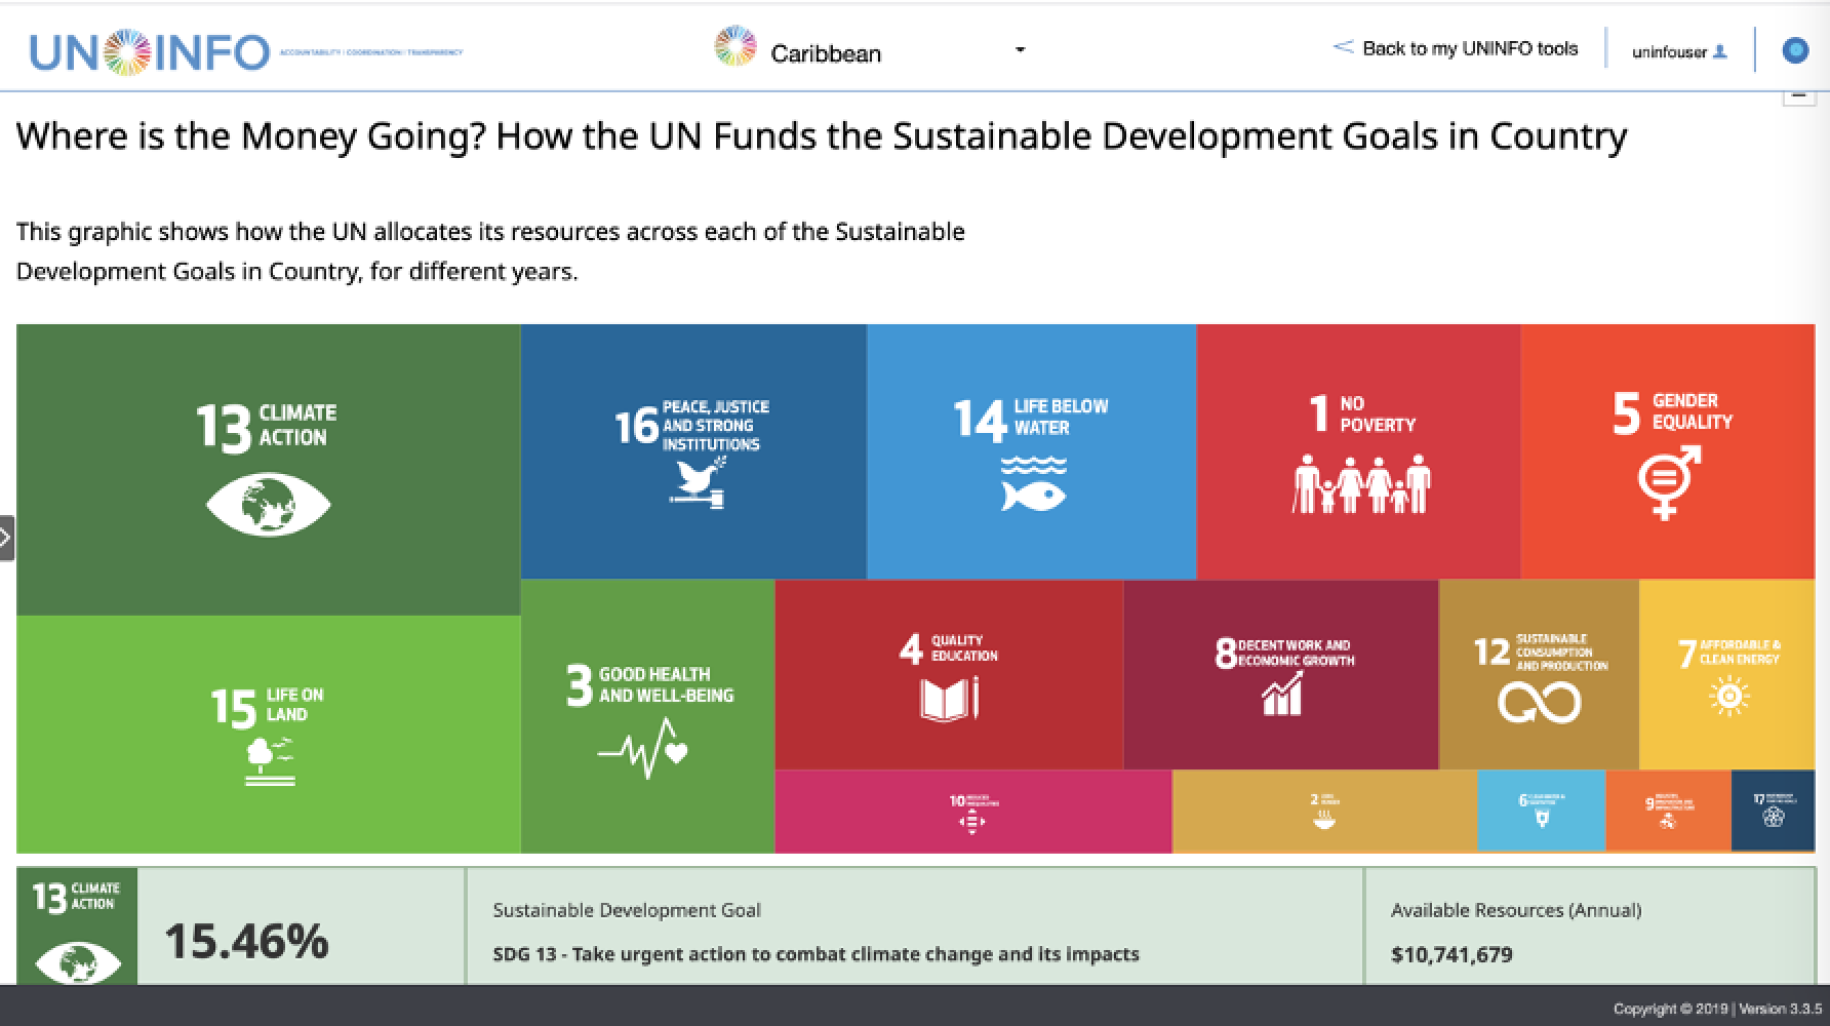 Una captura de pantalla del mapa del árbol de la UNINFO que muestra las inversiones en ODS (Objetivos de Desarrollo Sostenible) para el Caribe.